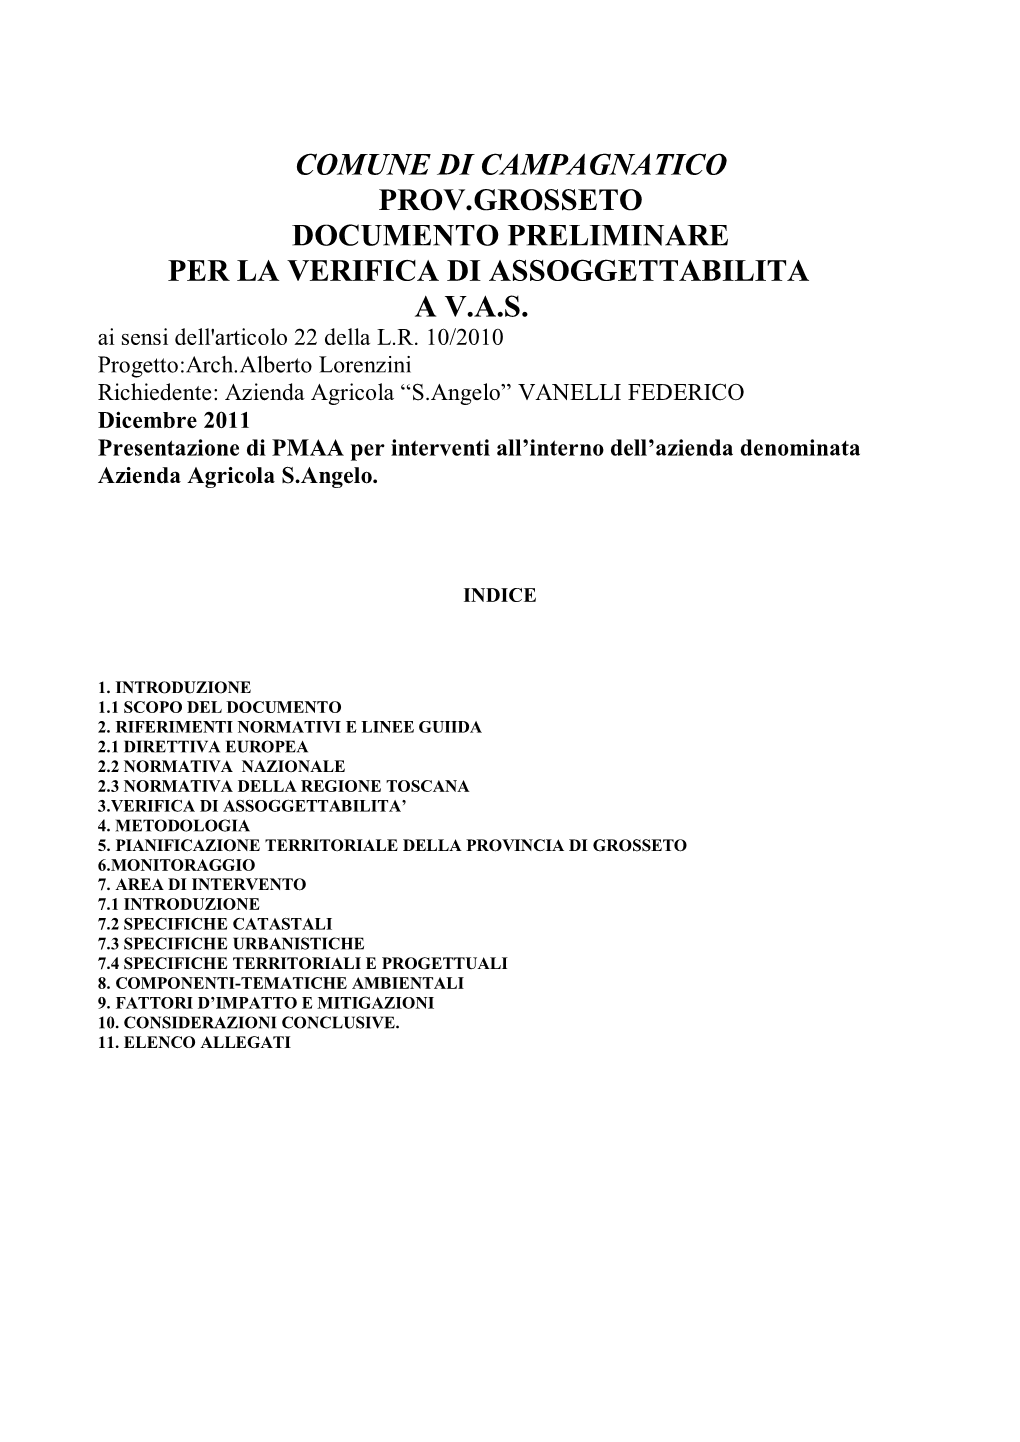 Comune Di Campagnatico Prov.Grosseto Documento Preliminare Per La Verifica Di Assoggettabilita a V.A.S